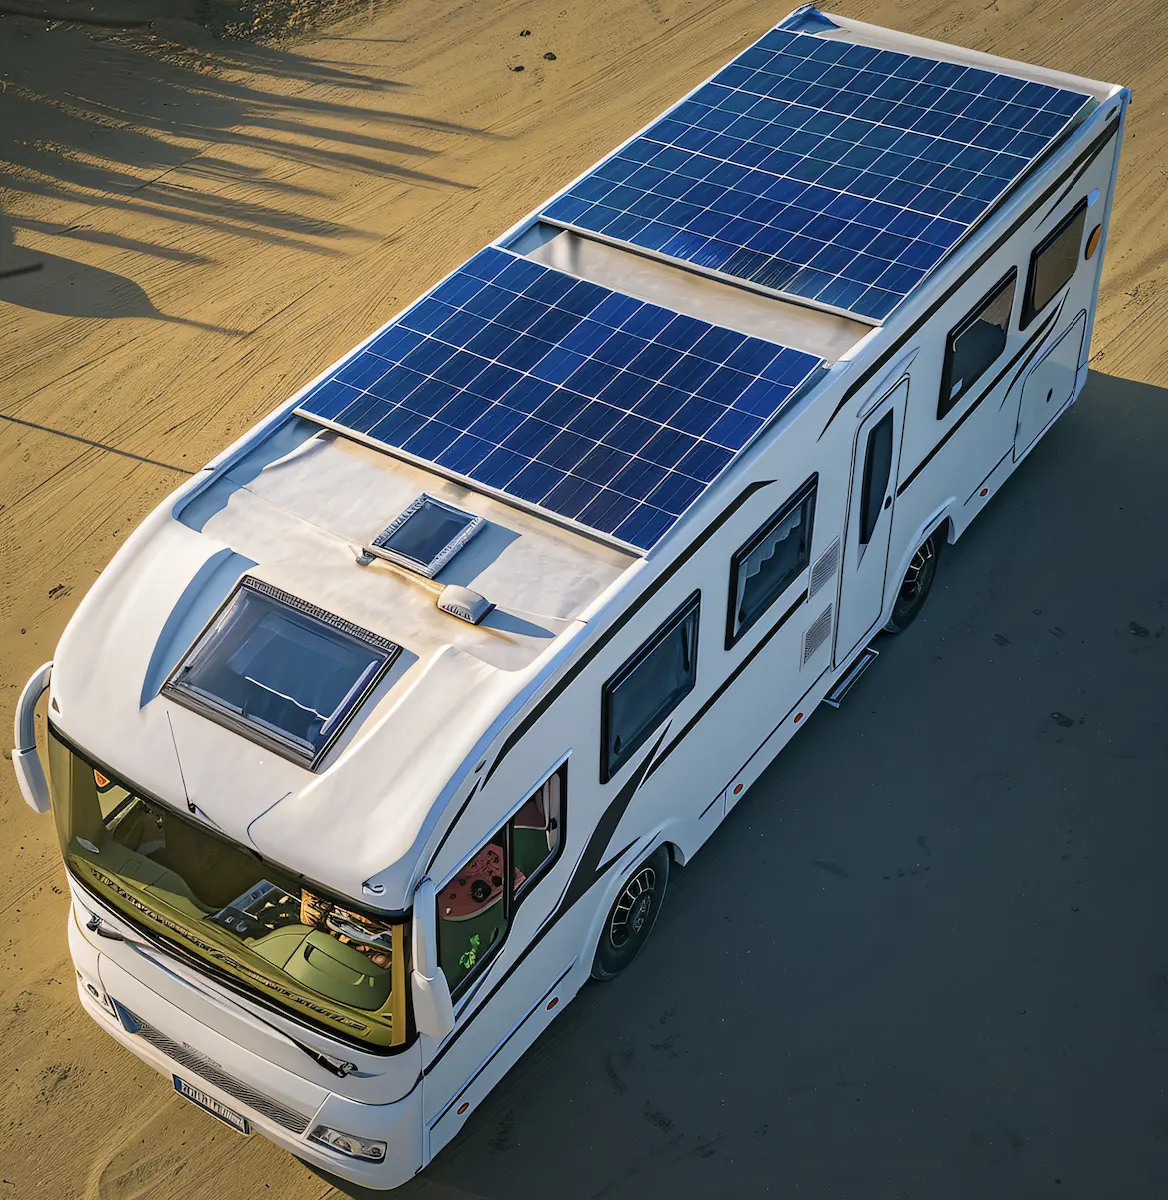 Pannello solare RV staffa di montaggio ABS bianco motorhome sulla struttura z staffa per pannello solare installare per RV Van Car